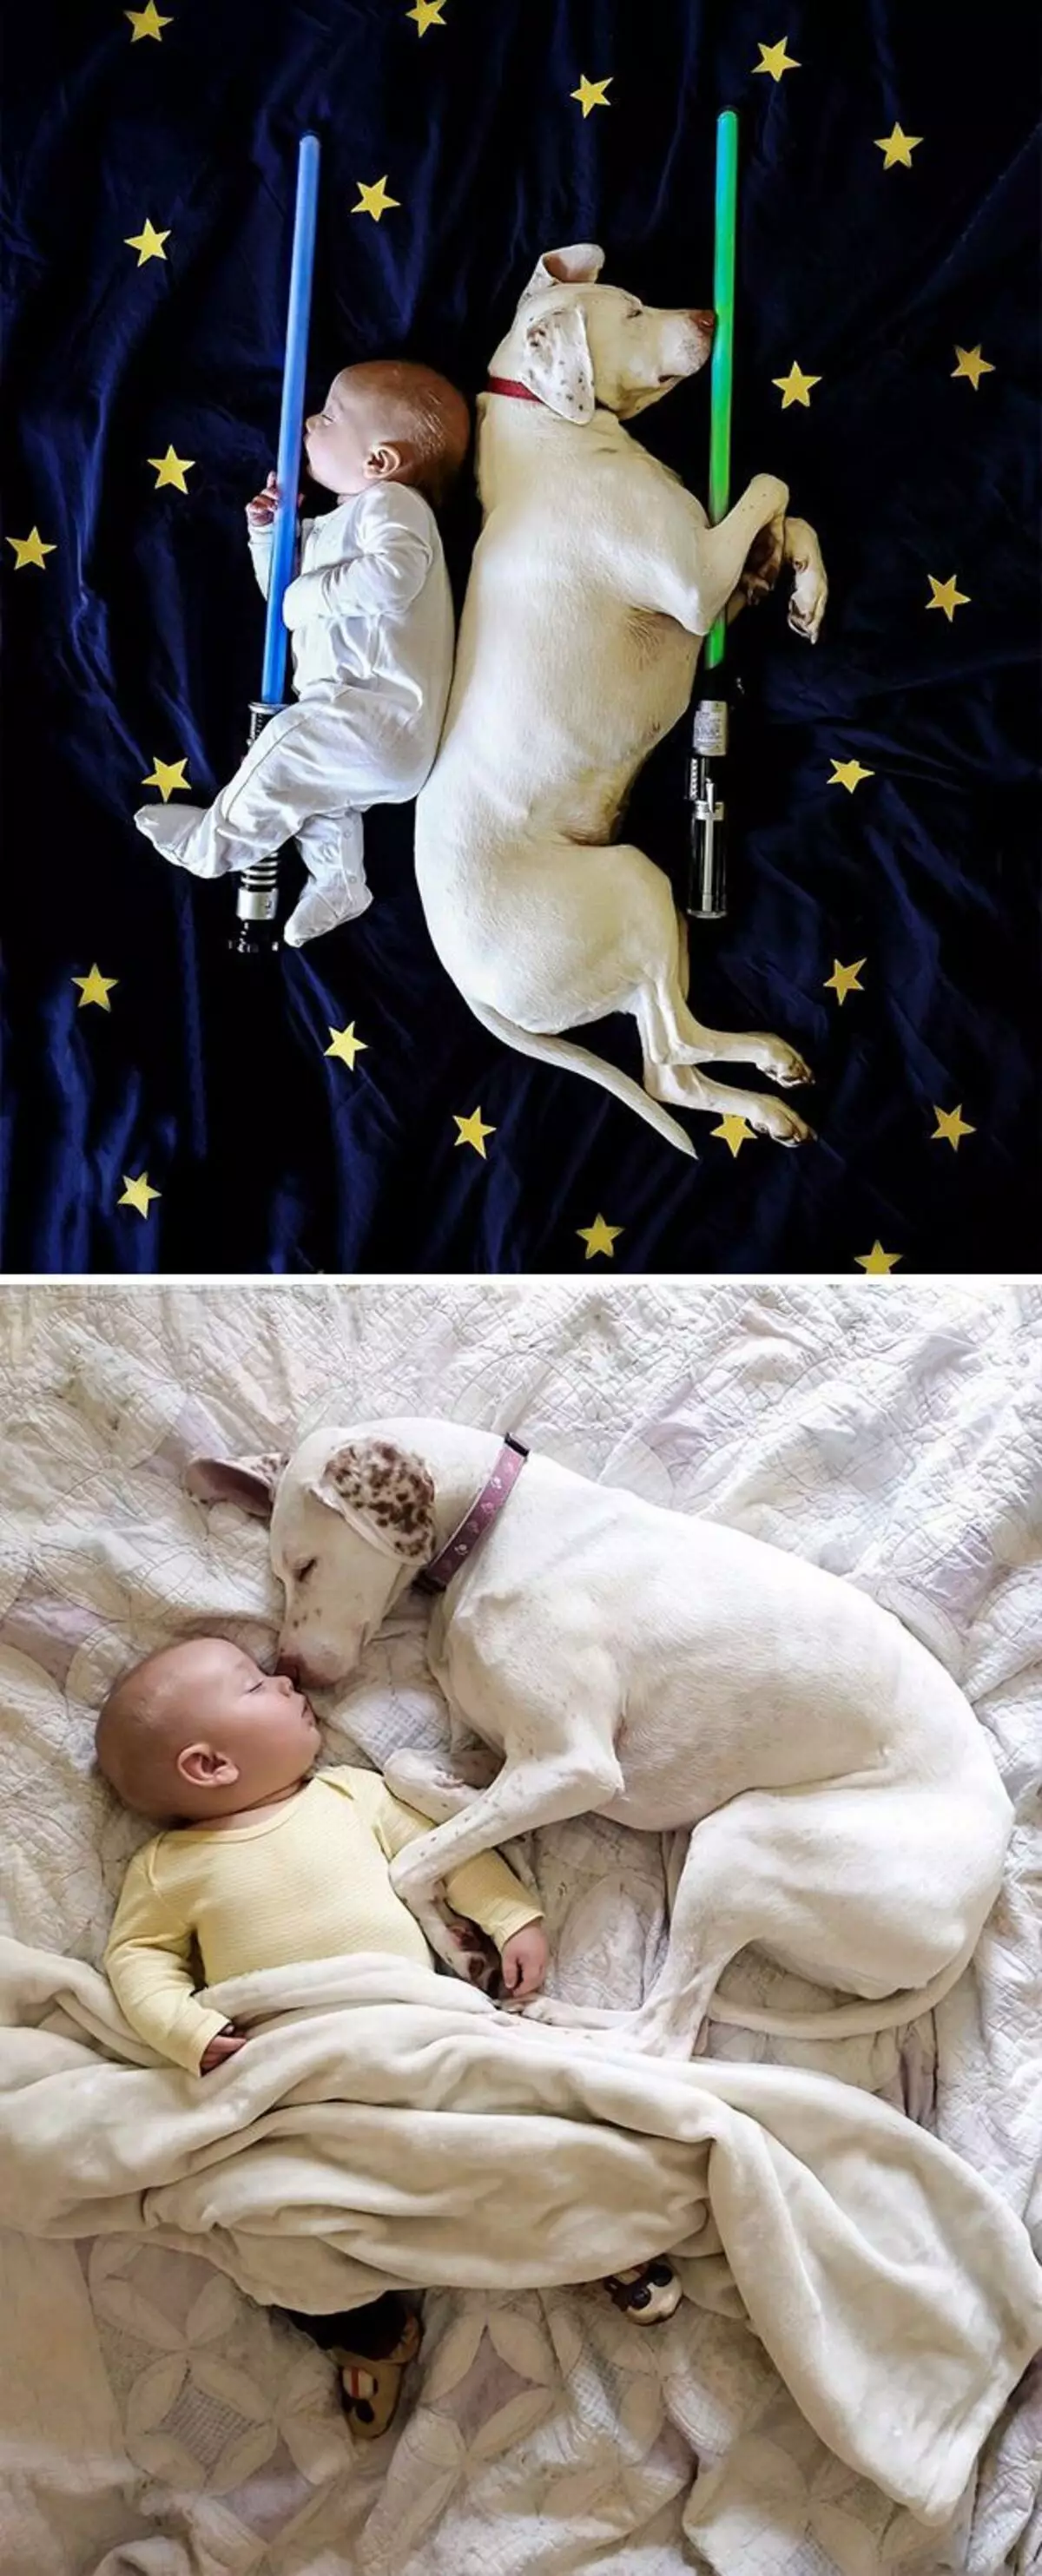 22 ફોટા સાબિત કરે છે કે સુખ માટે બાળકને કૂતરોની જરૂર છે, અને જો તમે અલગ રીતે વિચારો છો, તો તમે બરાબર એક બિલાડી છો 8720_18